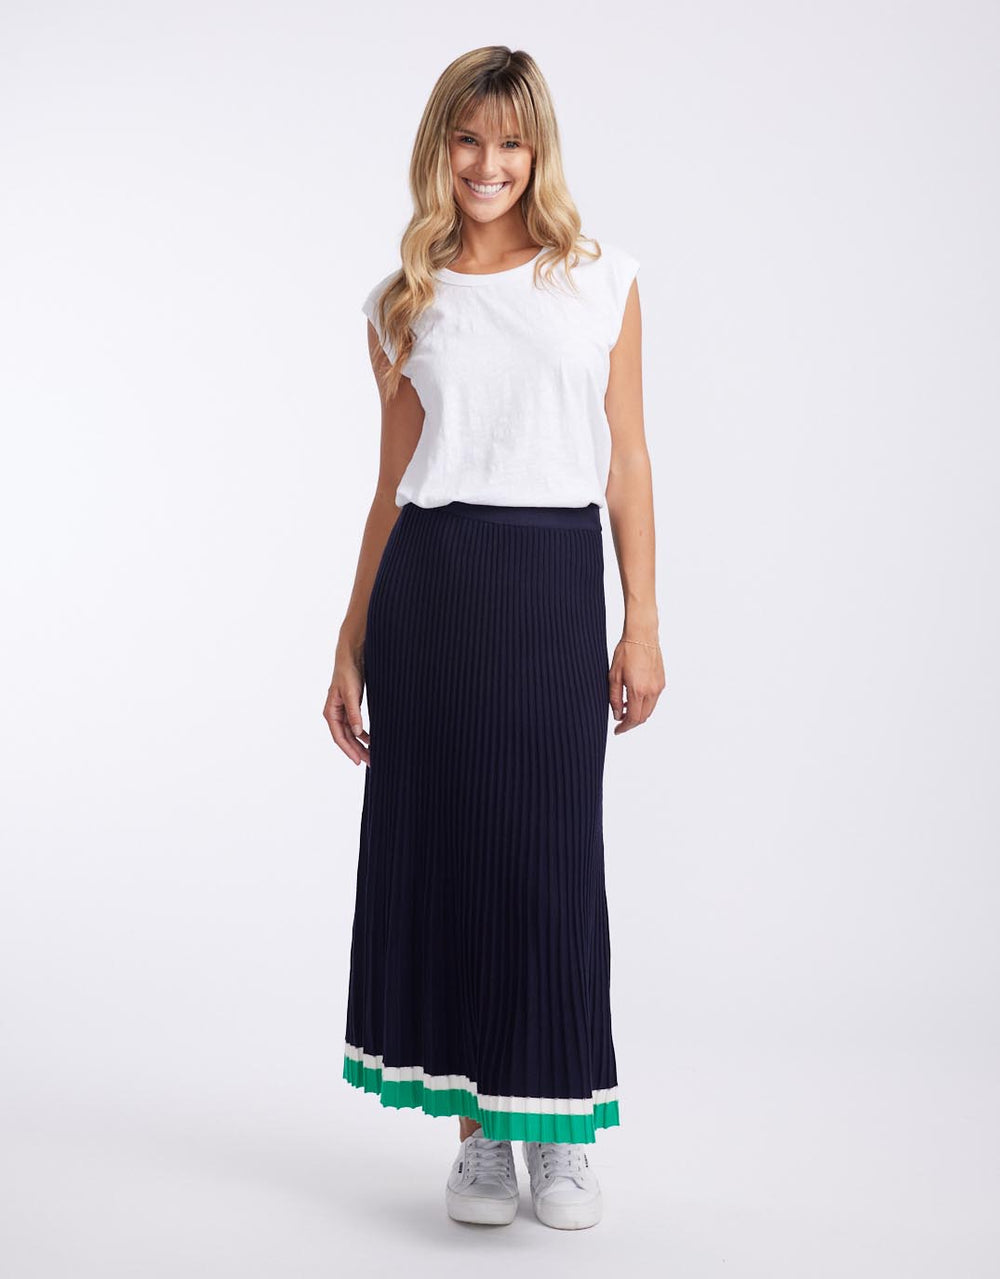 White & Co. - Giselle Rib Skirt - Navy/Green/White - White & Co Living Skirts